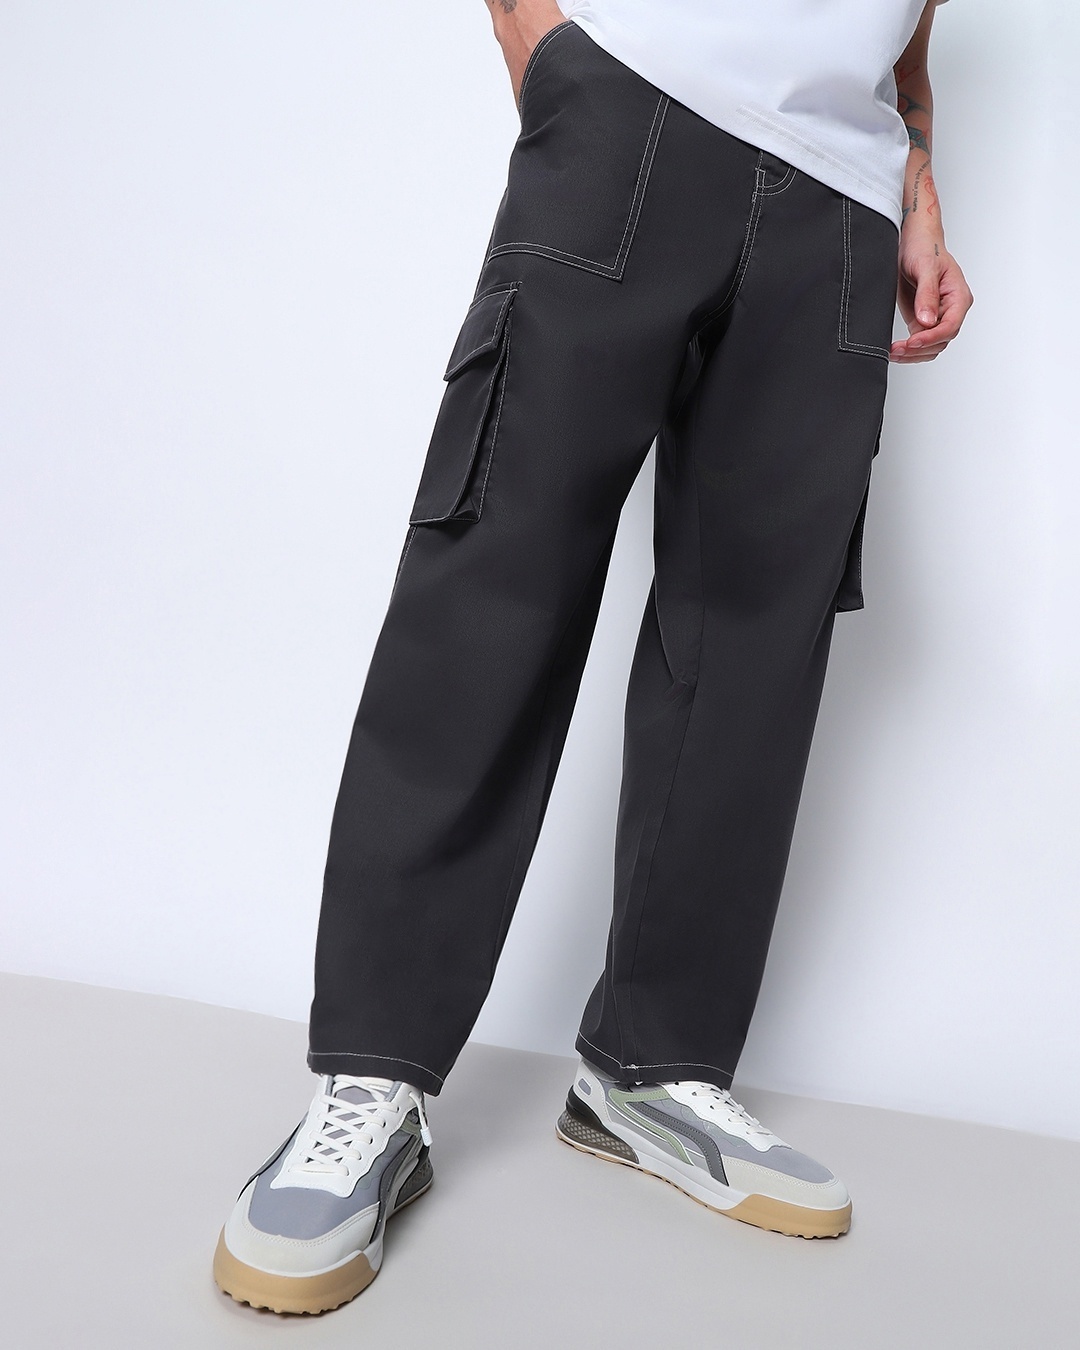 Buy Men's Grey Oversized Cargo Pants Online at Bewakoof